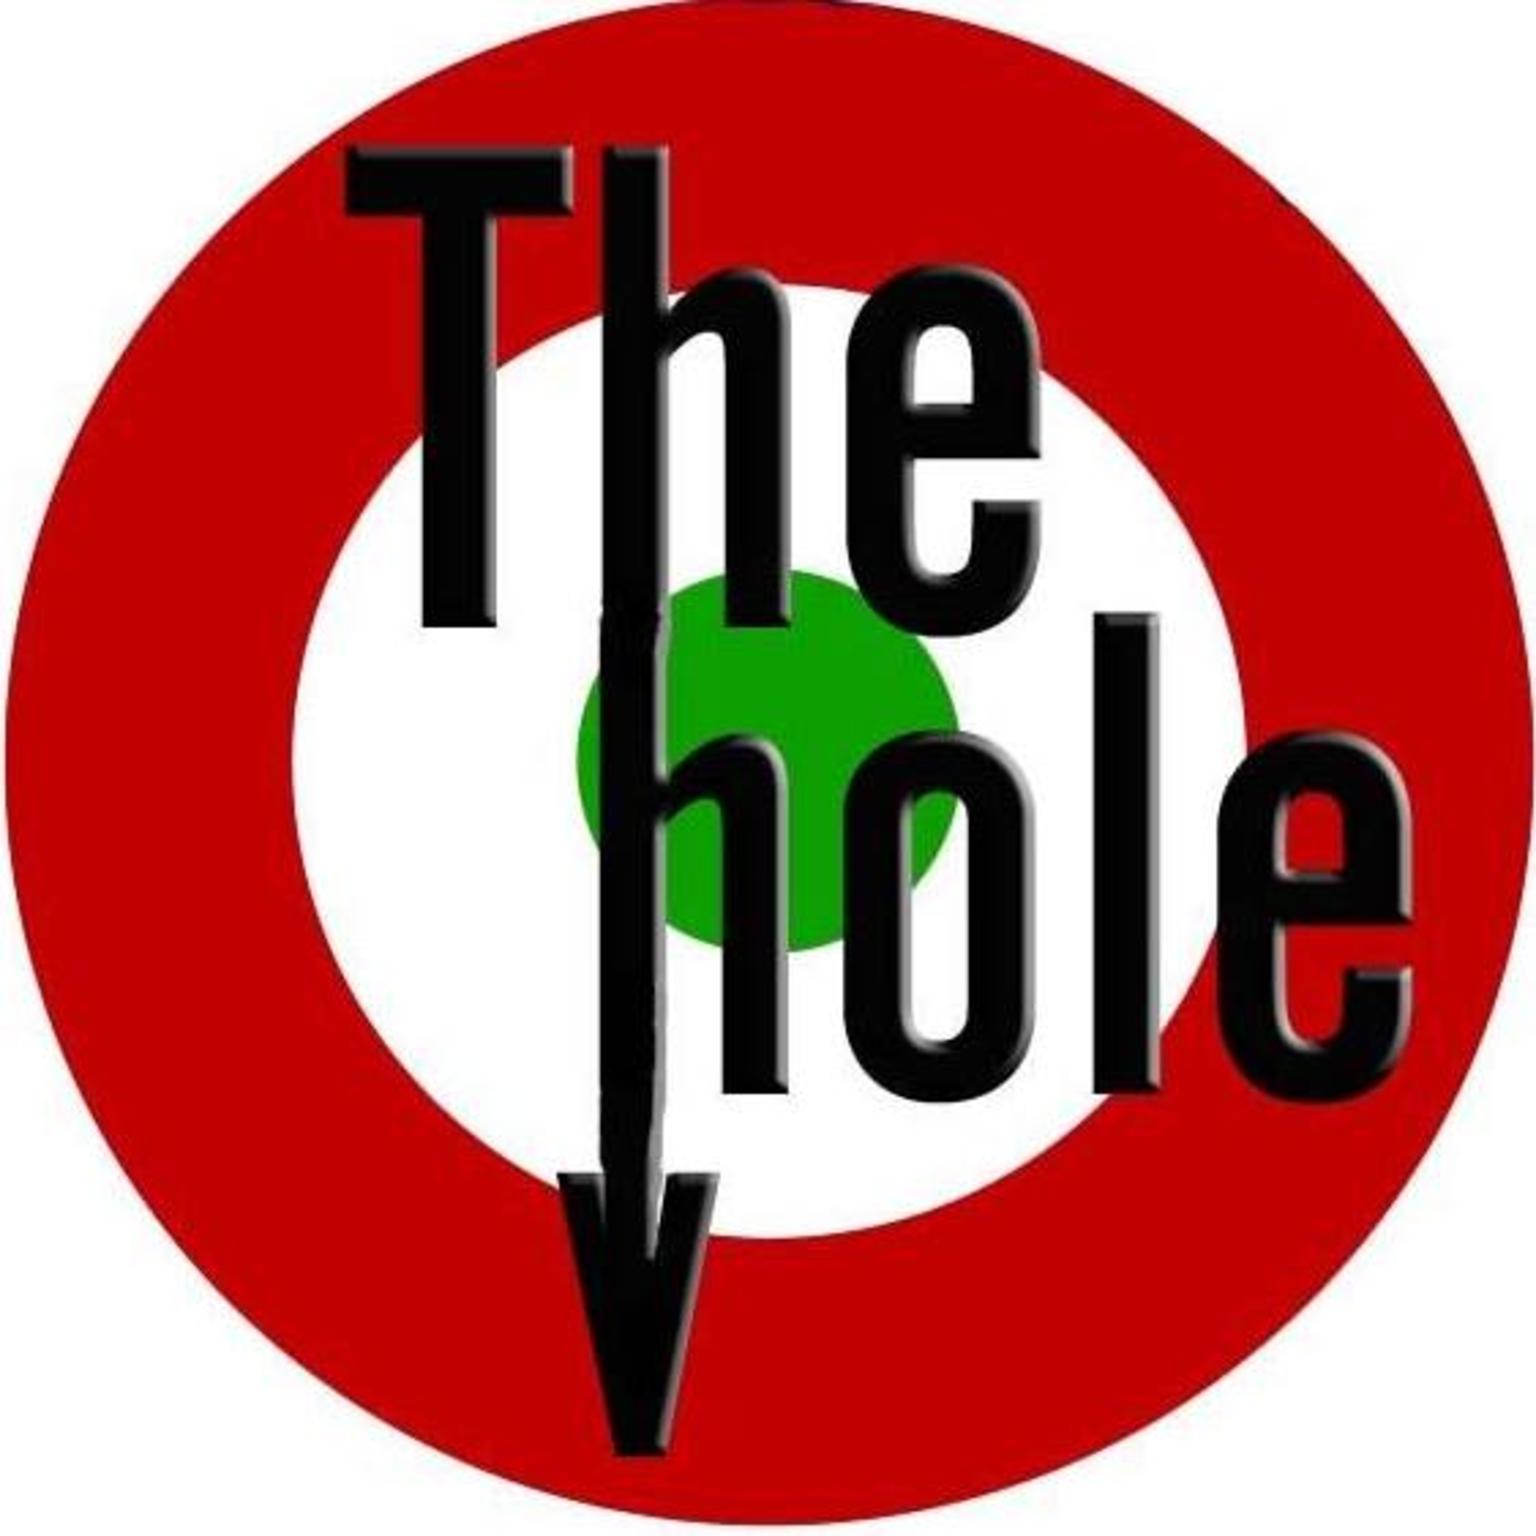 The Hole Pub